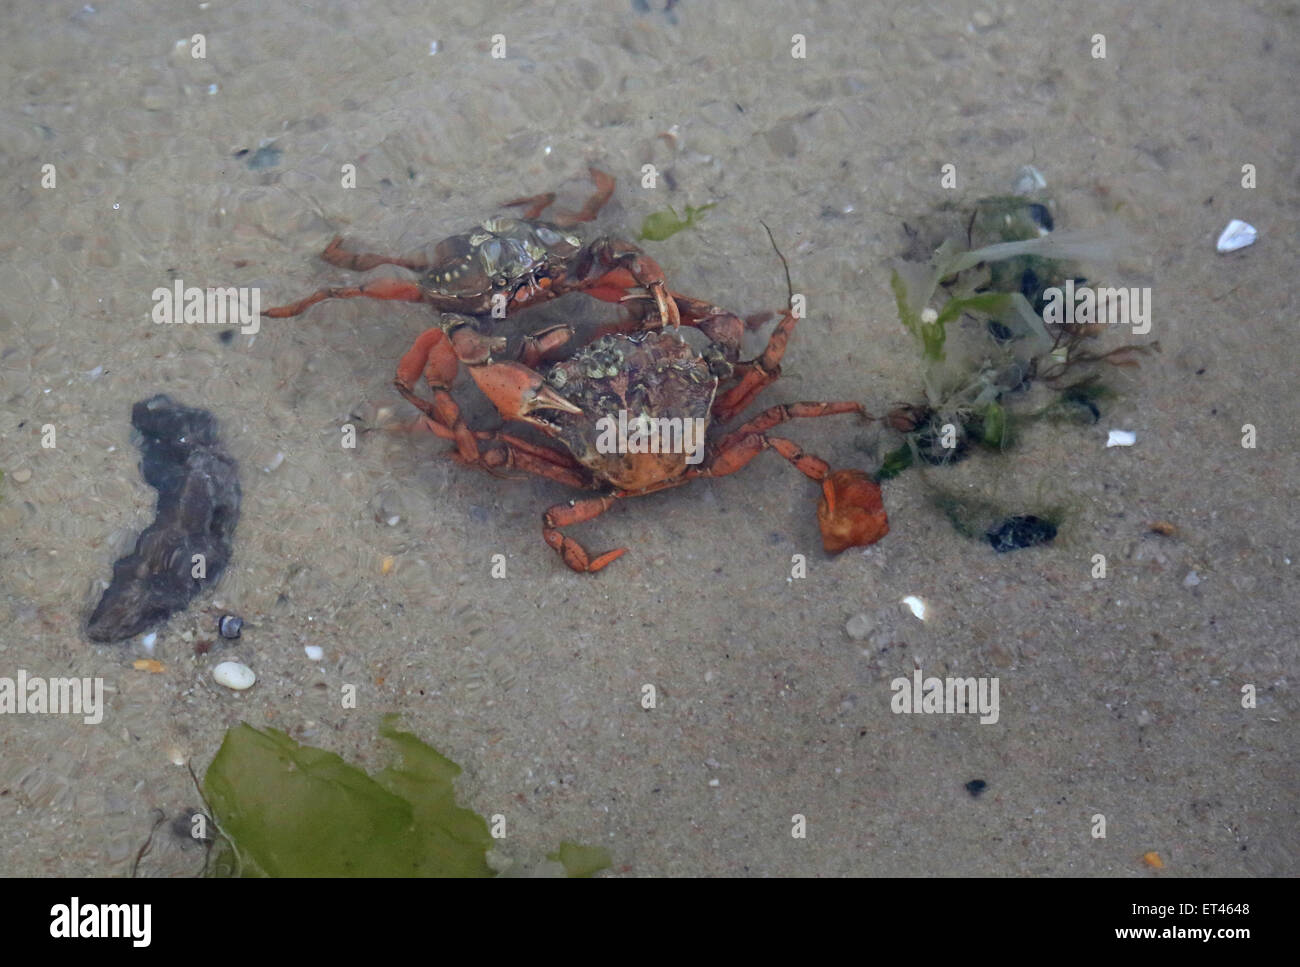 Liste, Deutschland, Krabben gemeinsame Strand Kampf miteinander Stockfoto